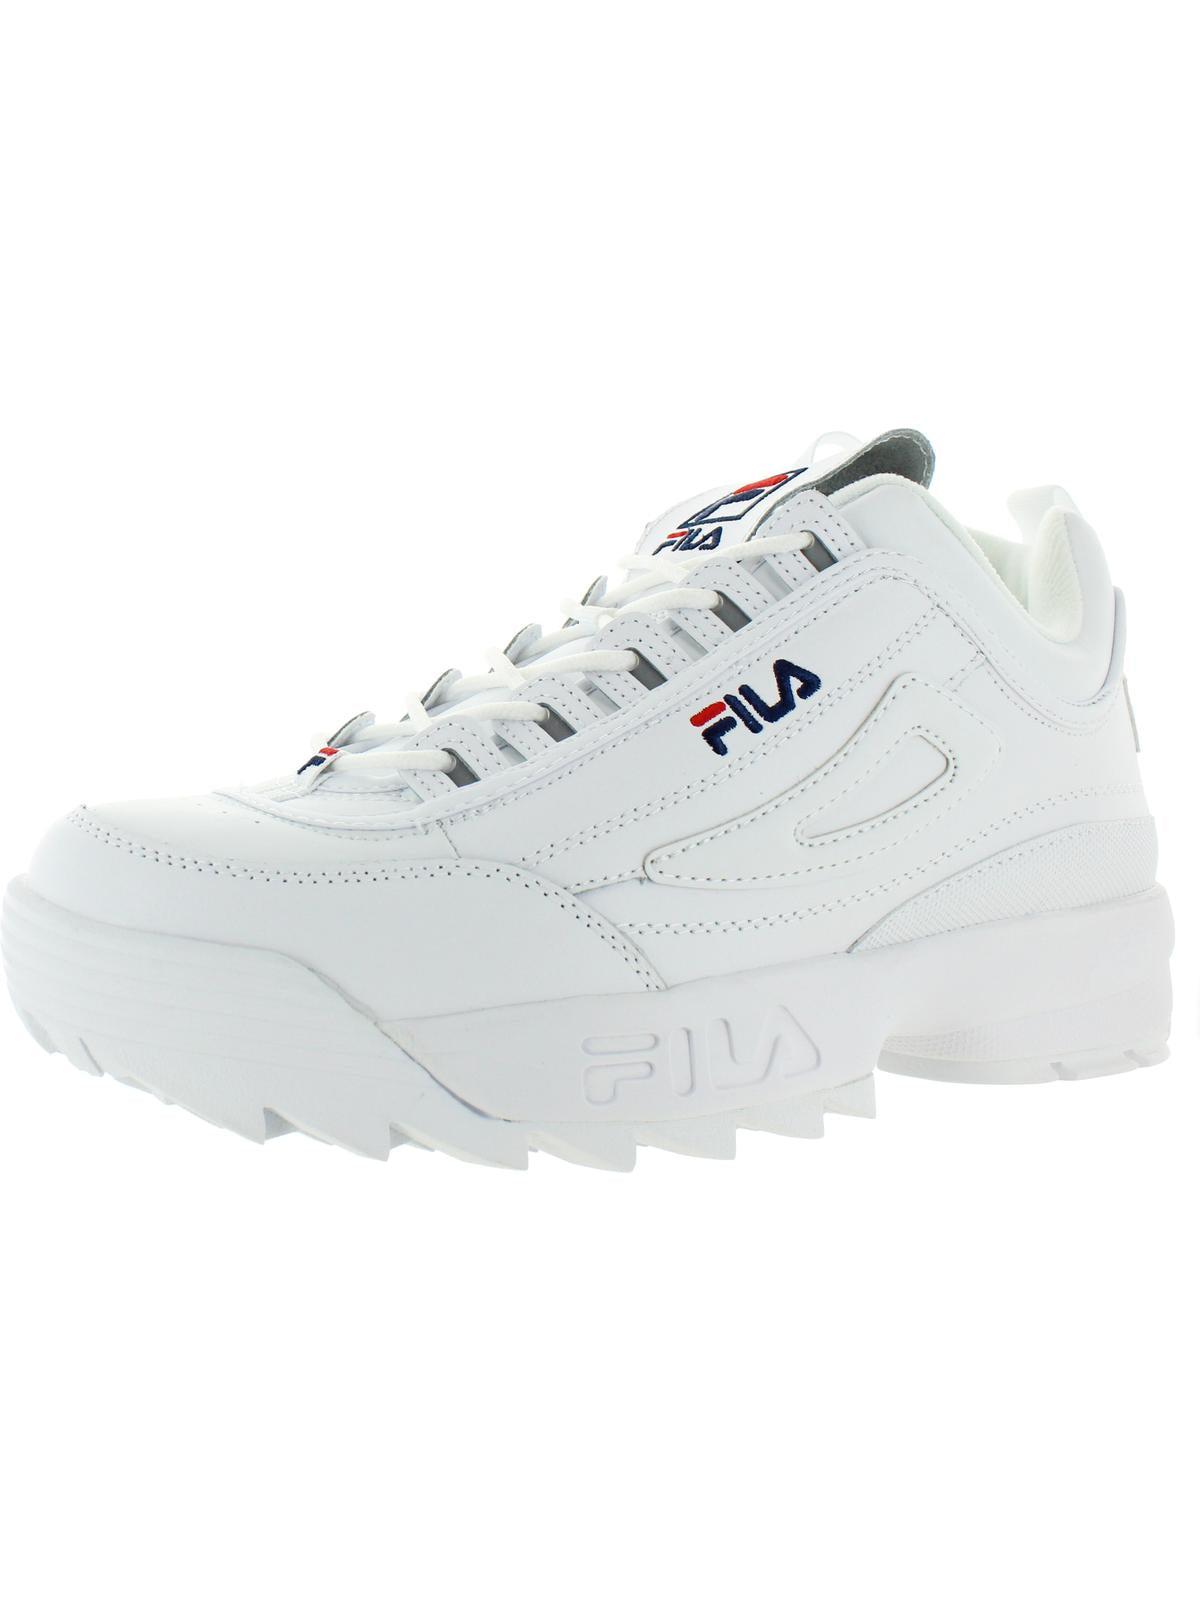 Fila Disruptor Ii Premium Leather Retro Sneakers in White for Men | Lyst